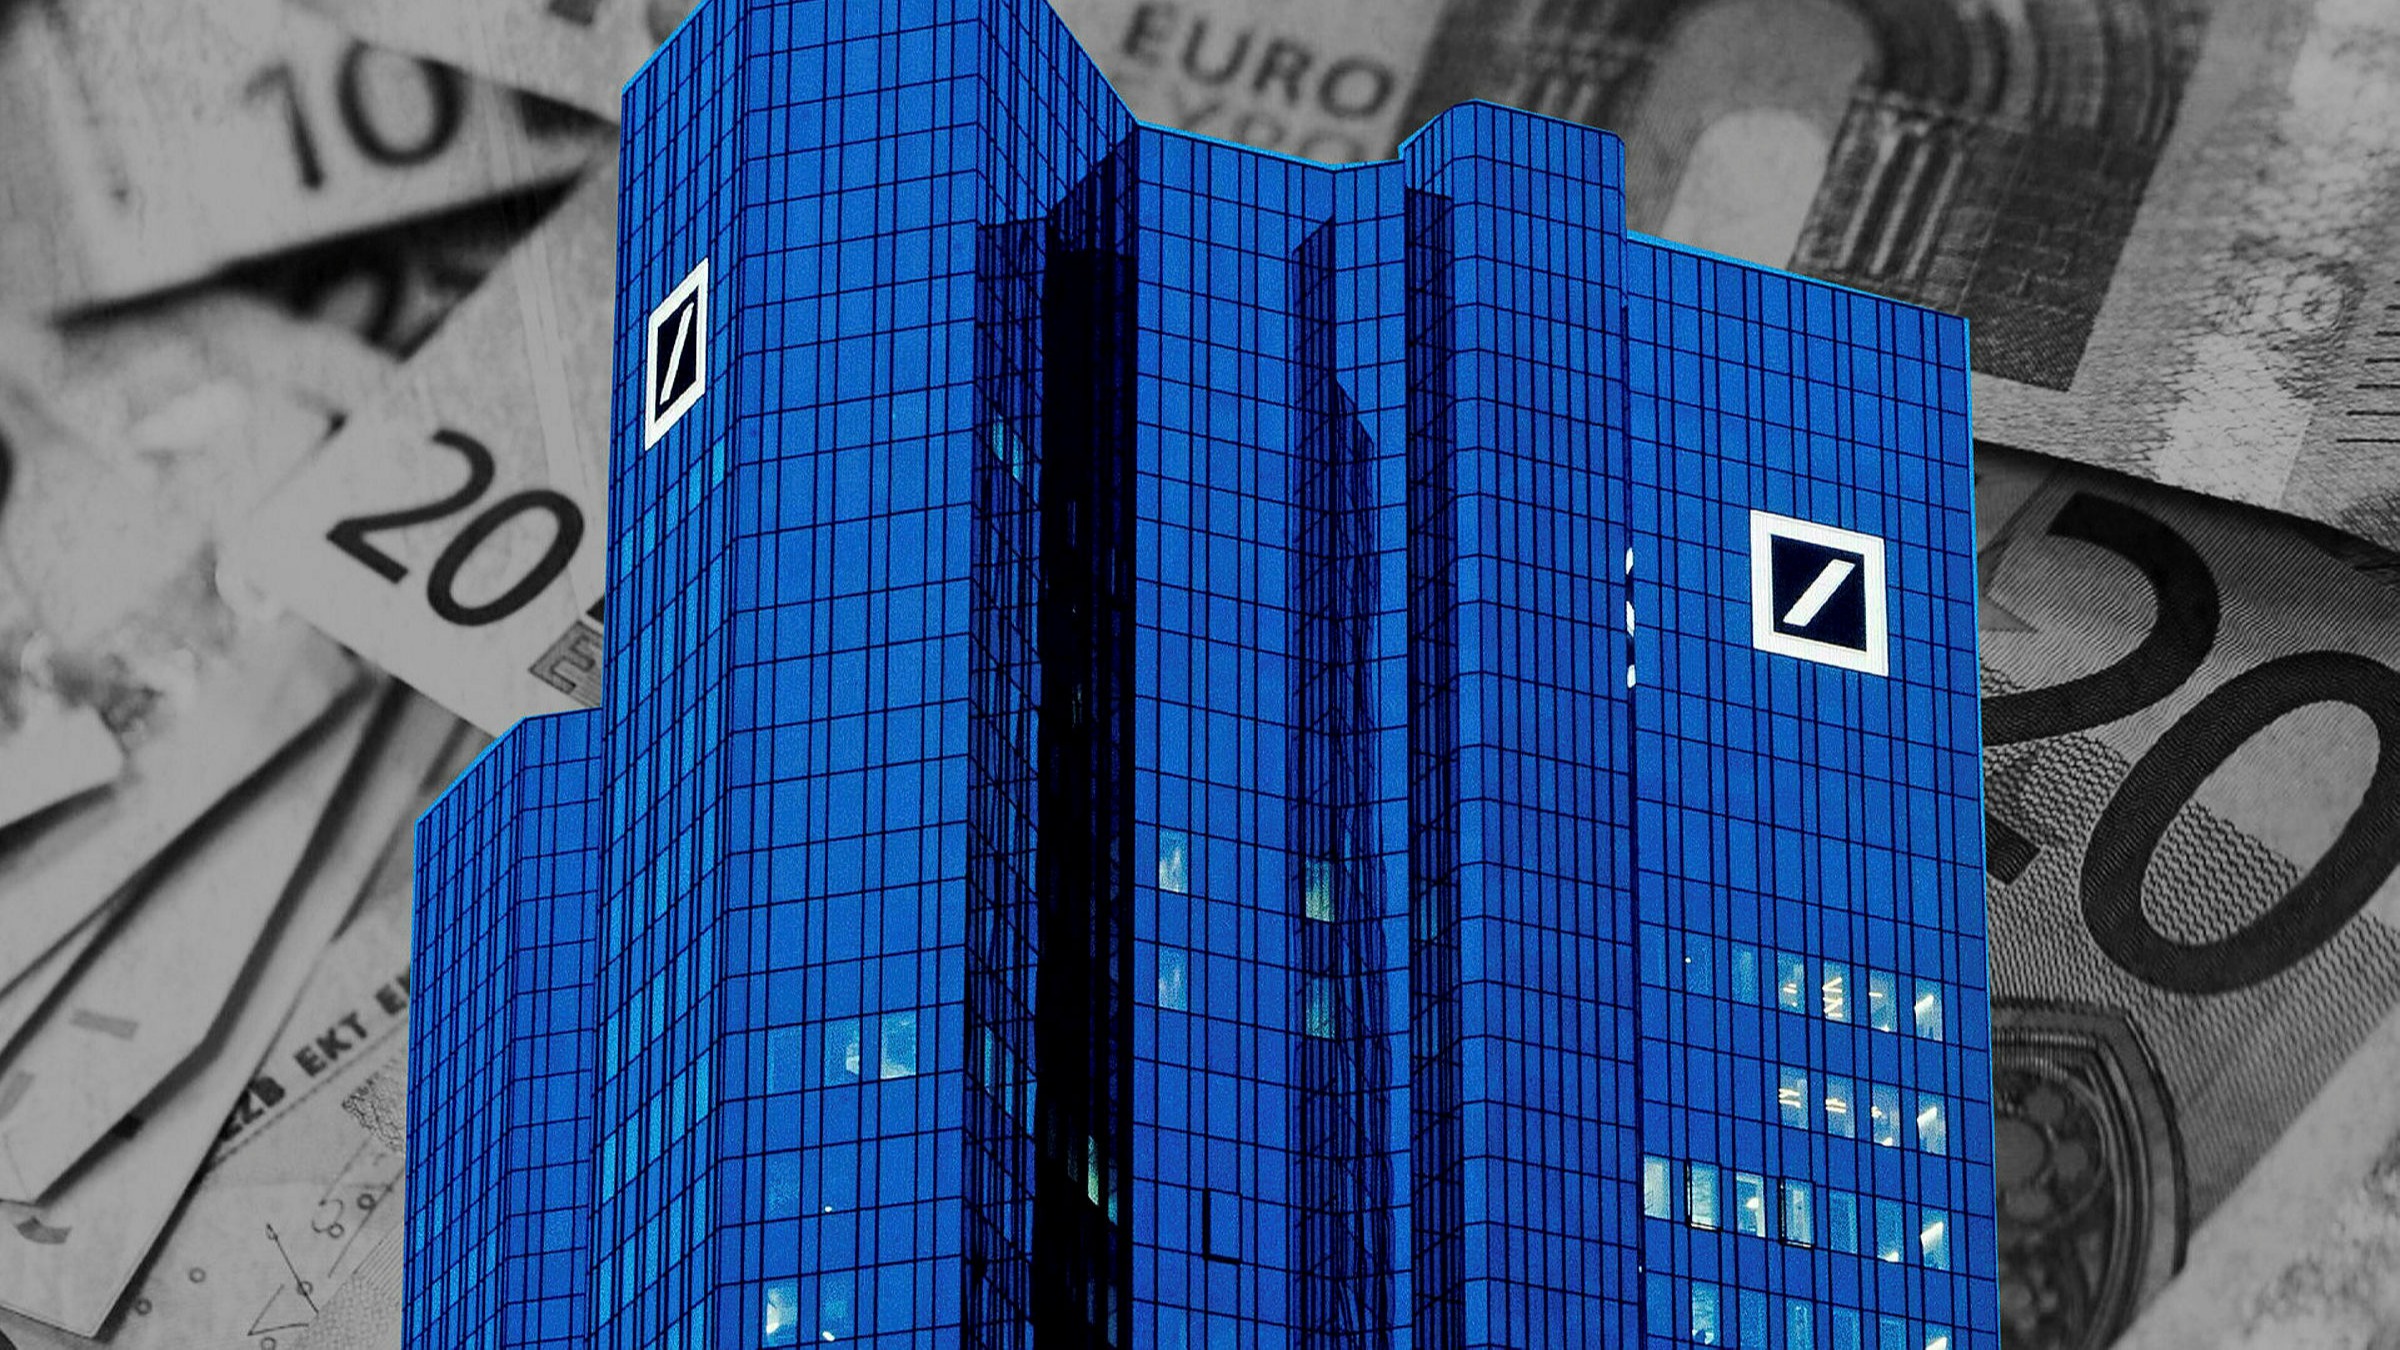 Money Laundering in Crypto vs. Banks